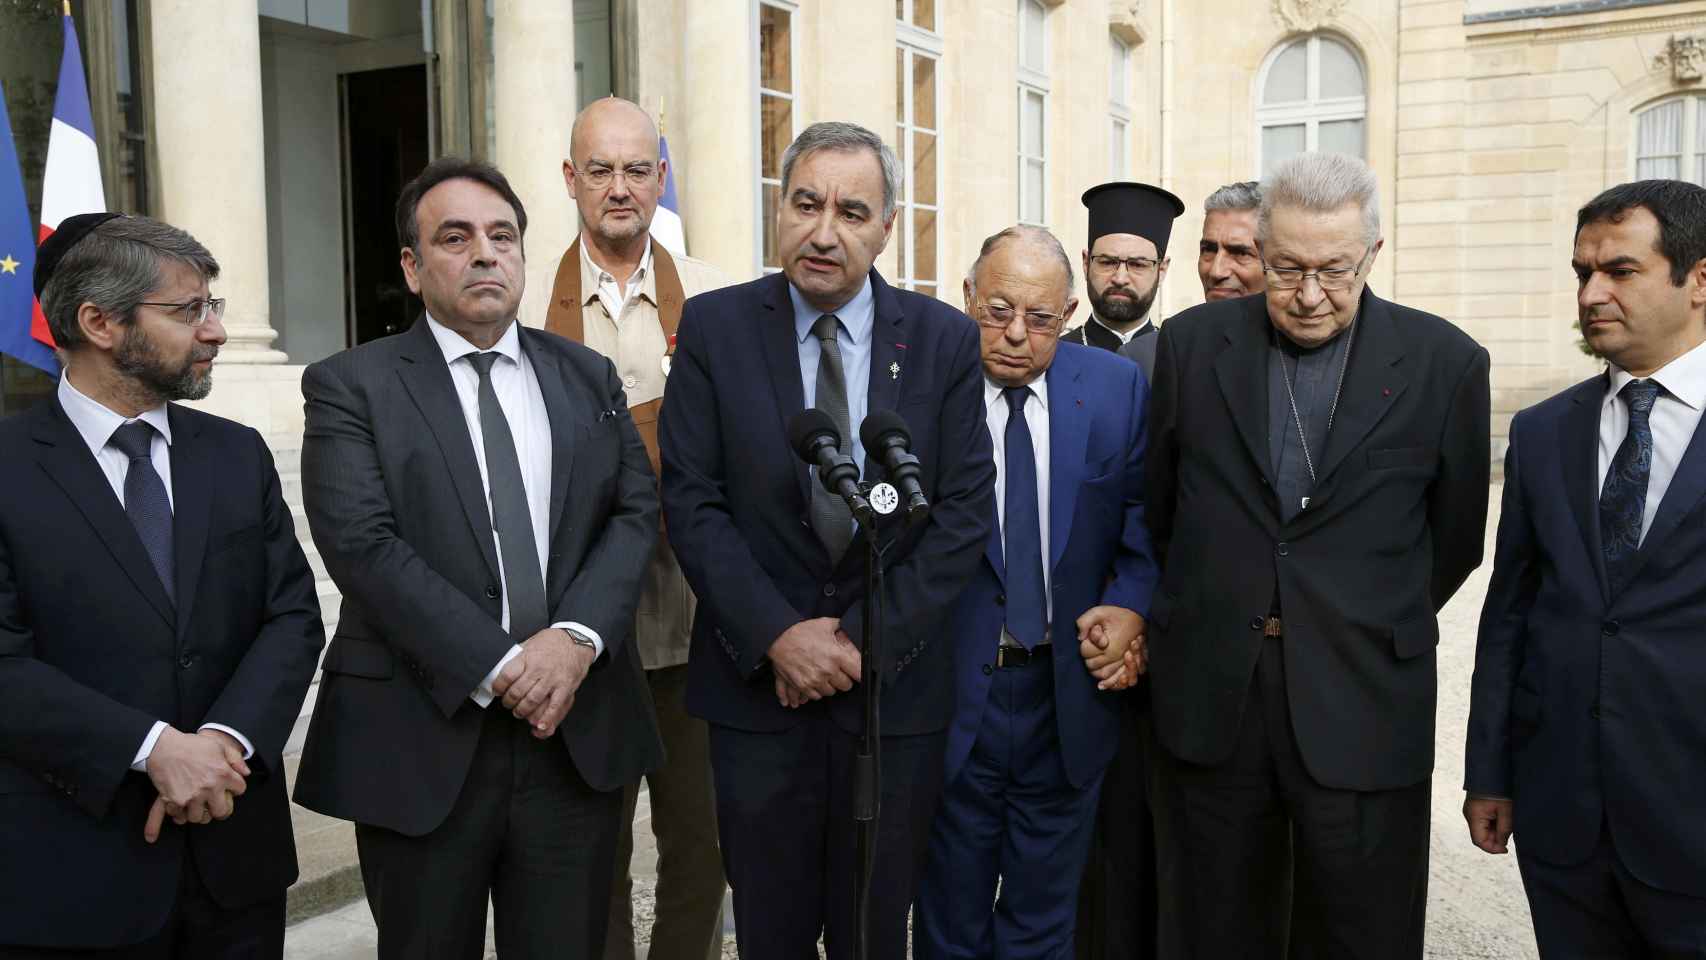 Los líderes religiosos de Francia comparecen juntos tras su reunión con Hollande.